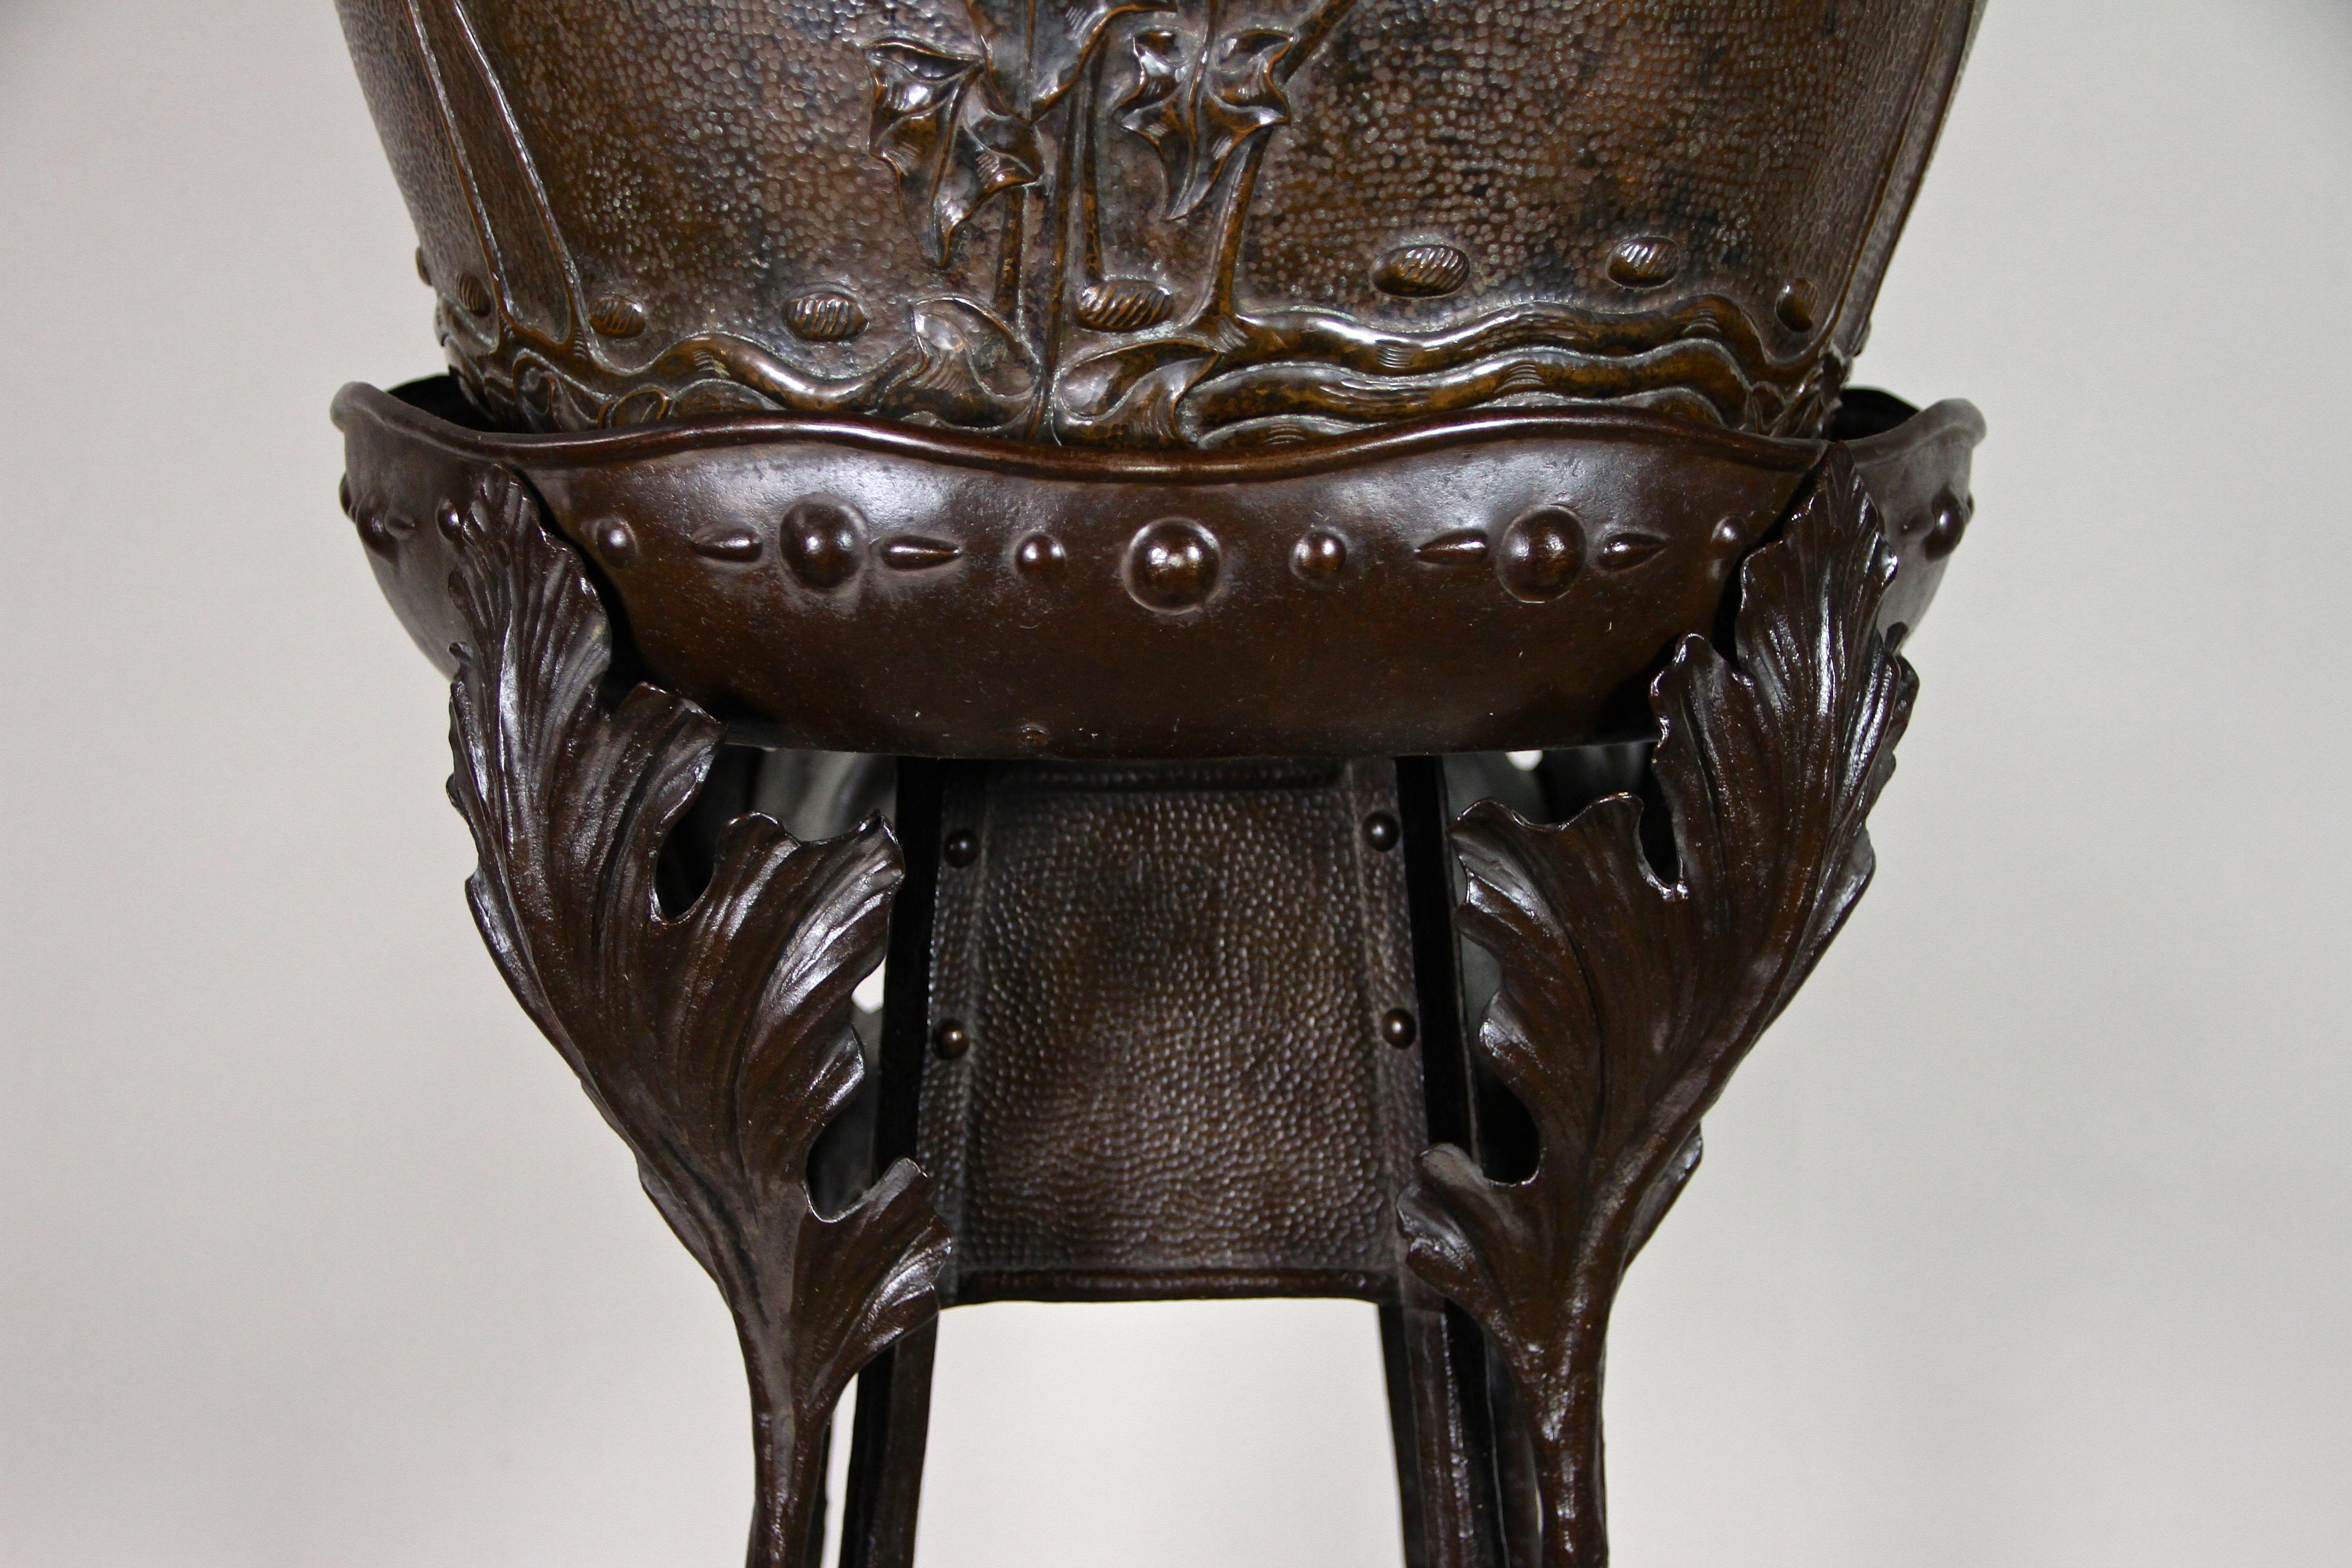 20th Century Art Nouveau Metal Pedestal with Copper Cachepot, France, circa 1900